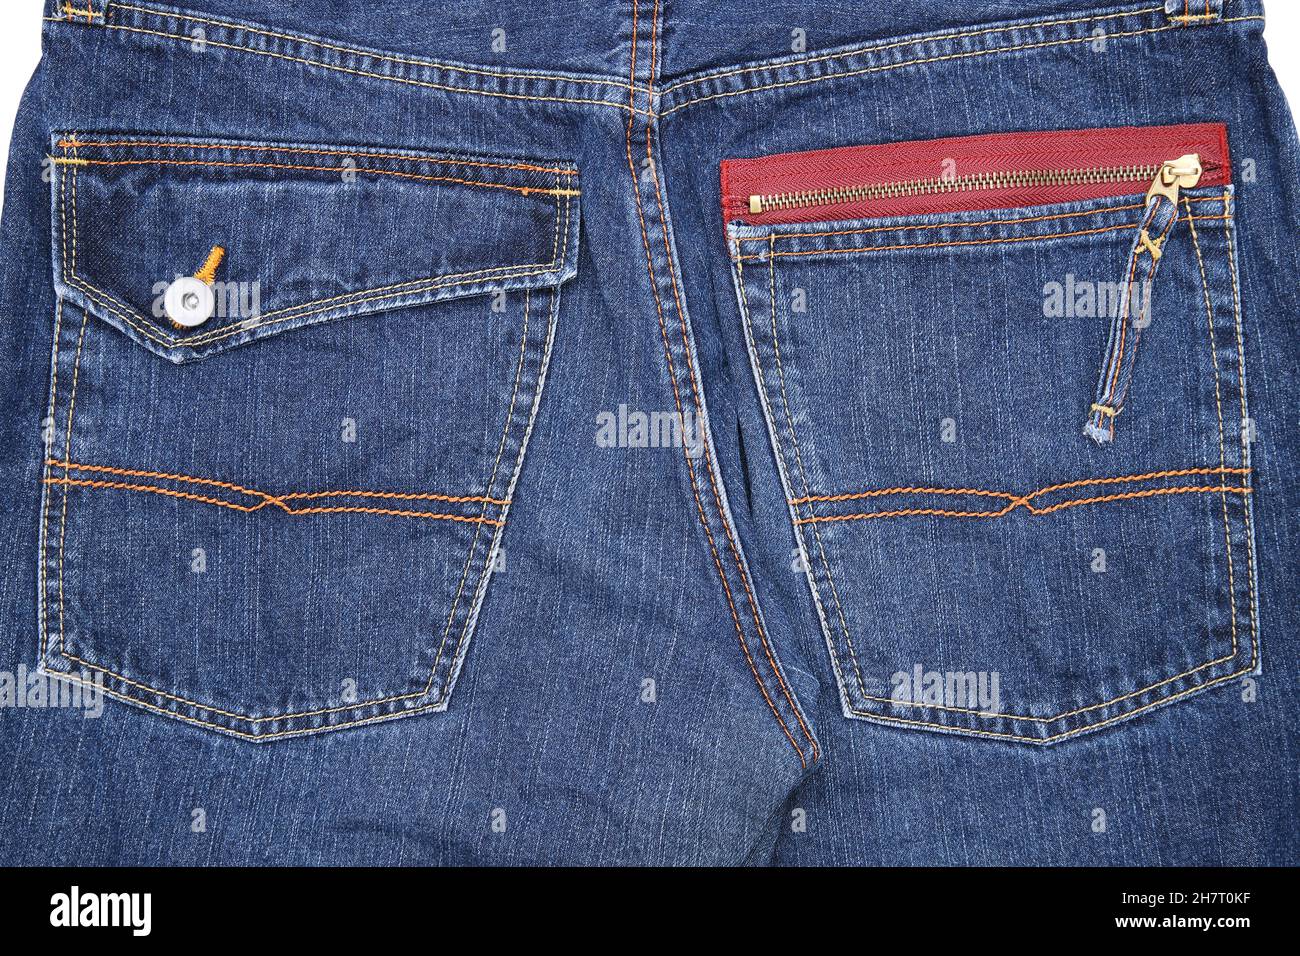 Pantaloni con cerniera immagini e fotografie stock ad alta risoluzione -  Alamy